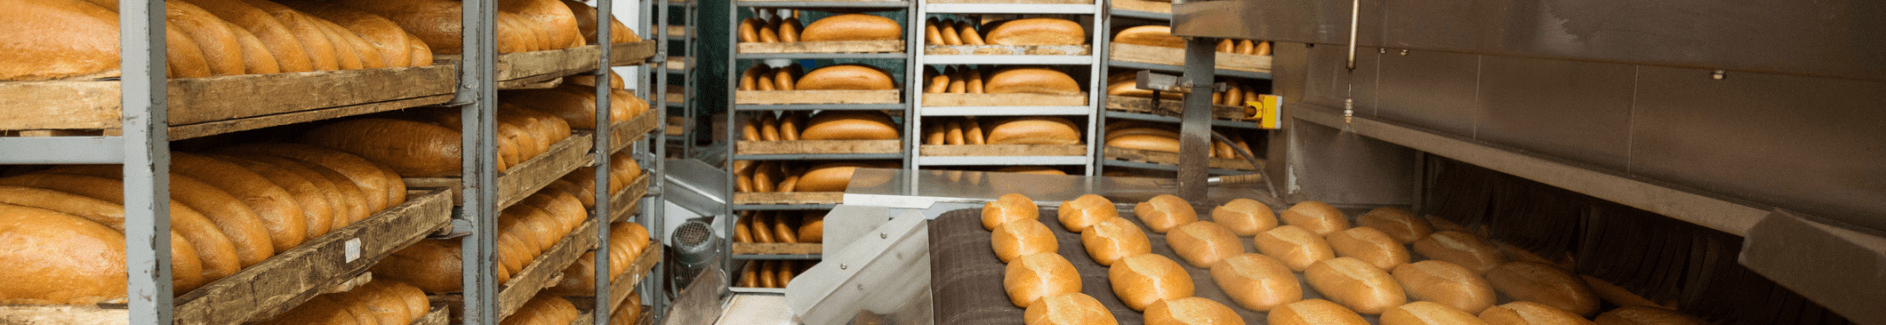 racks of freshly baked bread